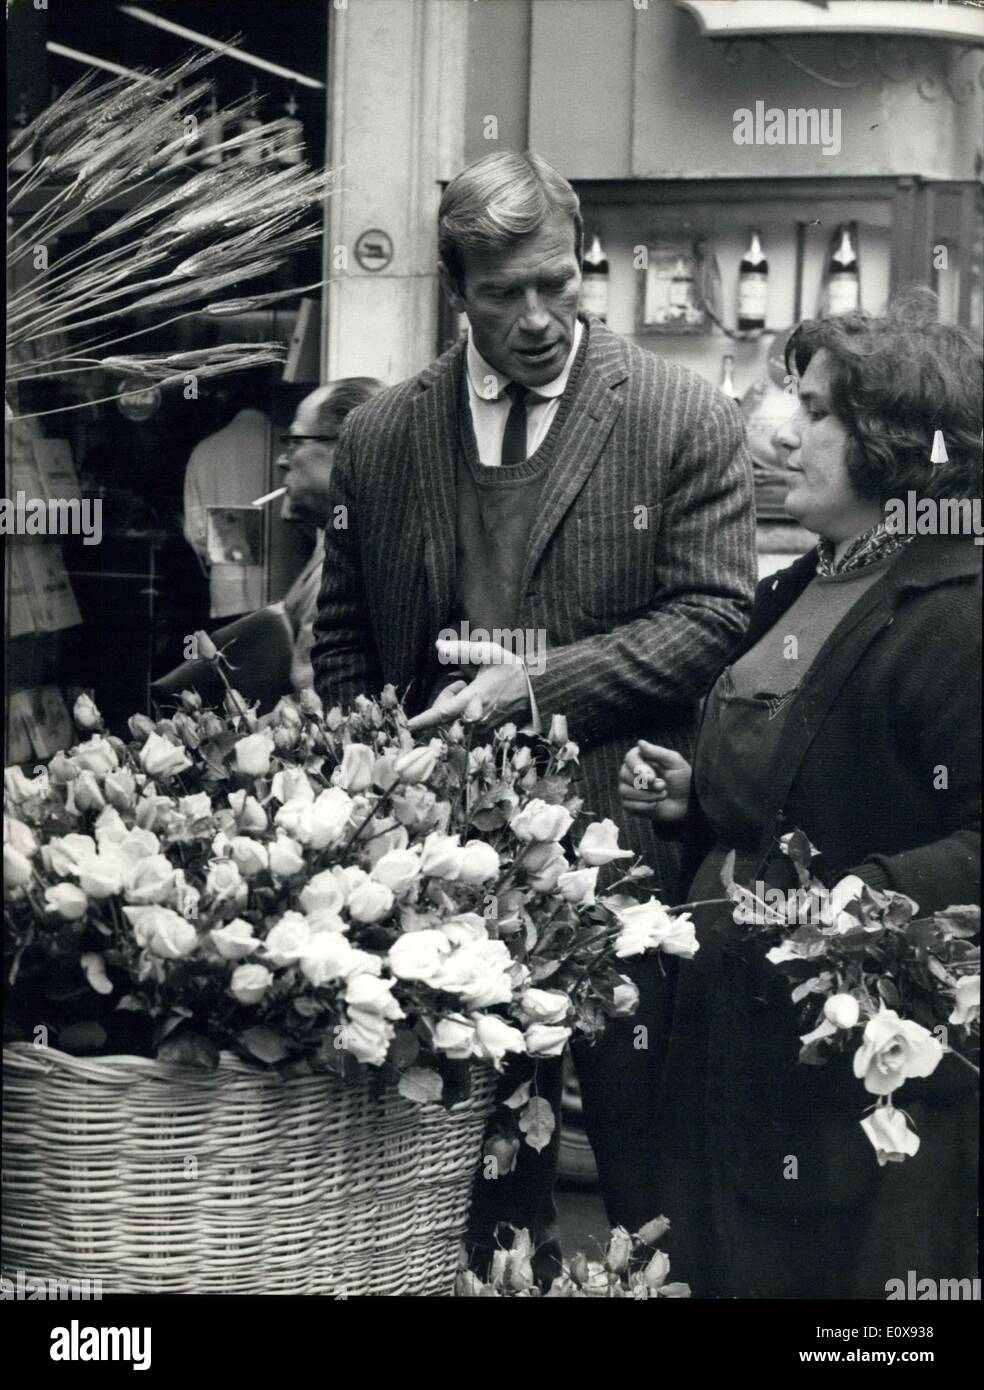 27. November 1965 - Secret Agent 077, Alias Ken Clark, US-amerikanischer Schauspieler, unten Iais die Waffe um die Blumen zu kaufen. Verleihen er wird seine Verlobte die Blumen oder verbergen der Blumen werden die Waffe während einer neuen Aktion zu? Das Foto zeigt Ken Clark die Blumen auf den spanischen Schritt zu kaufen. Stockfoto